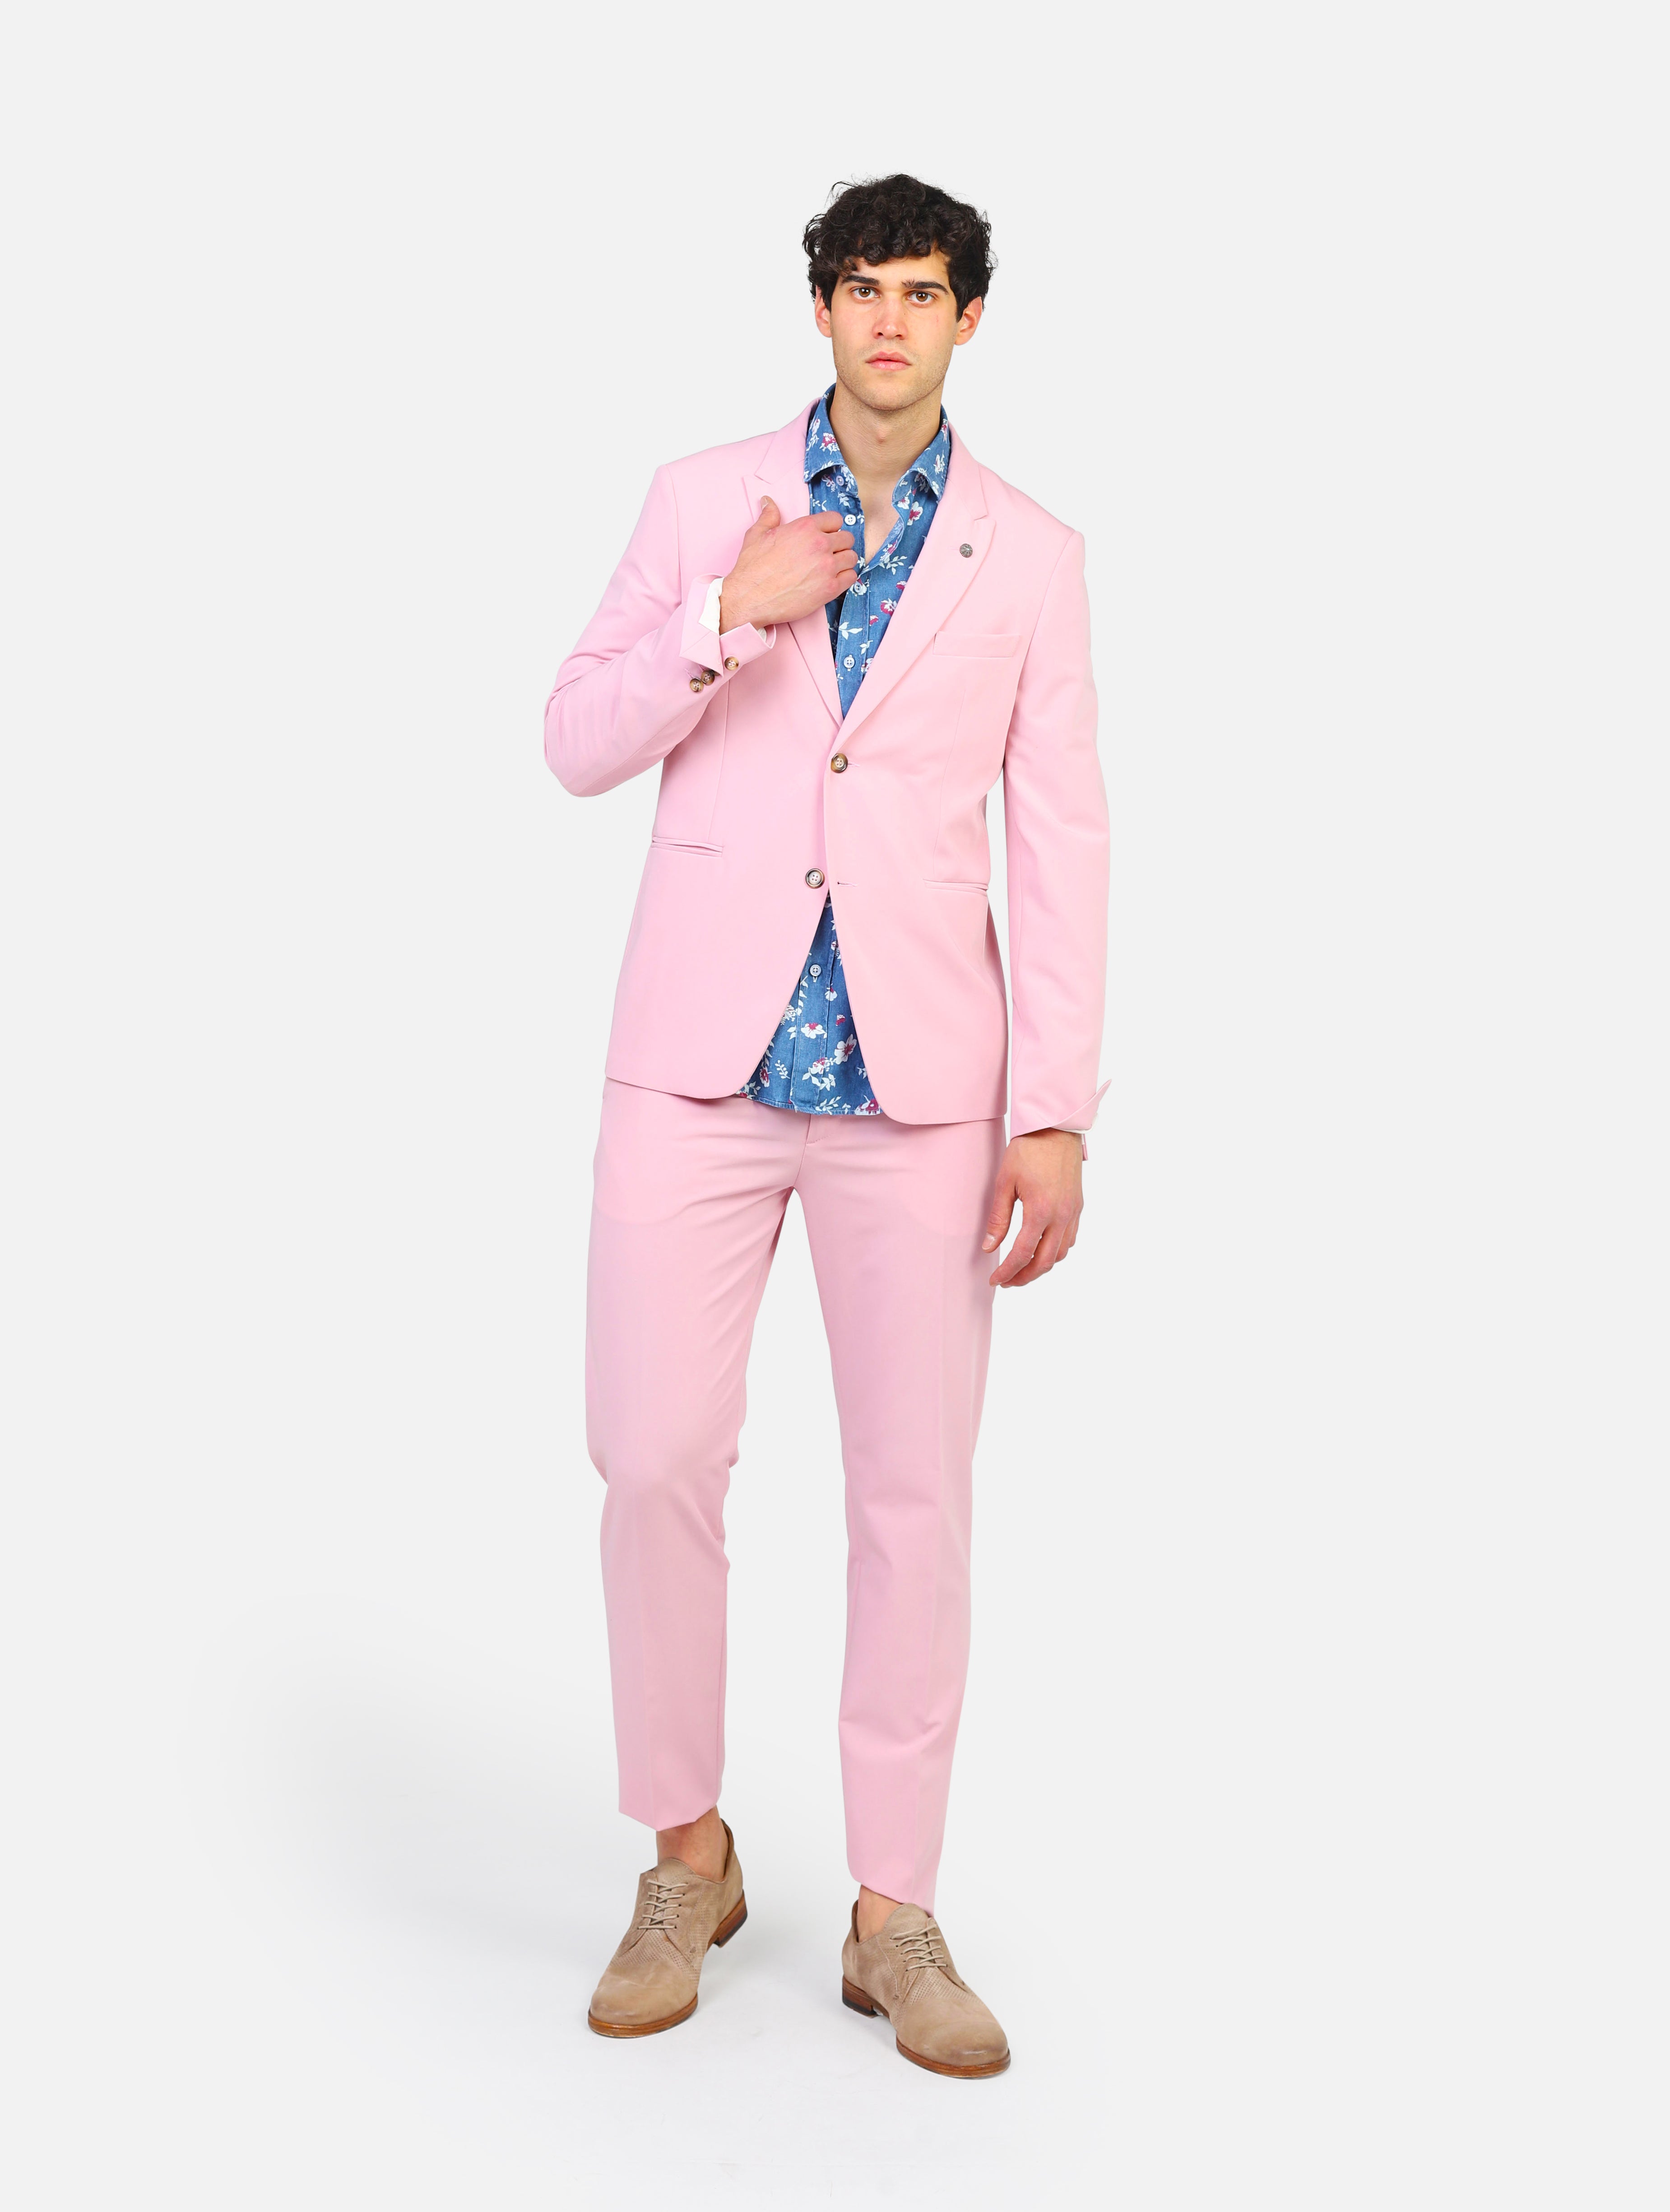 Giacca con pantalone officina 36 - 9001 alexis rosa rosa uomo 